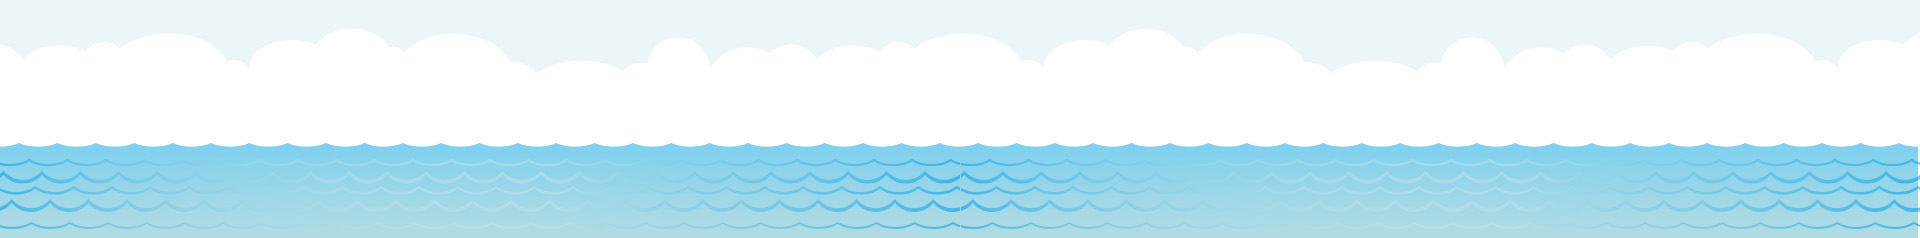 石垣島の波のイメージ